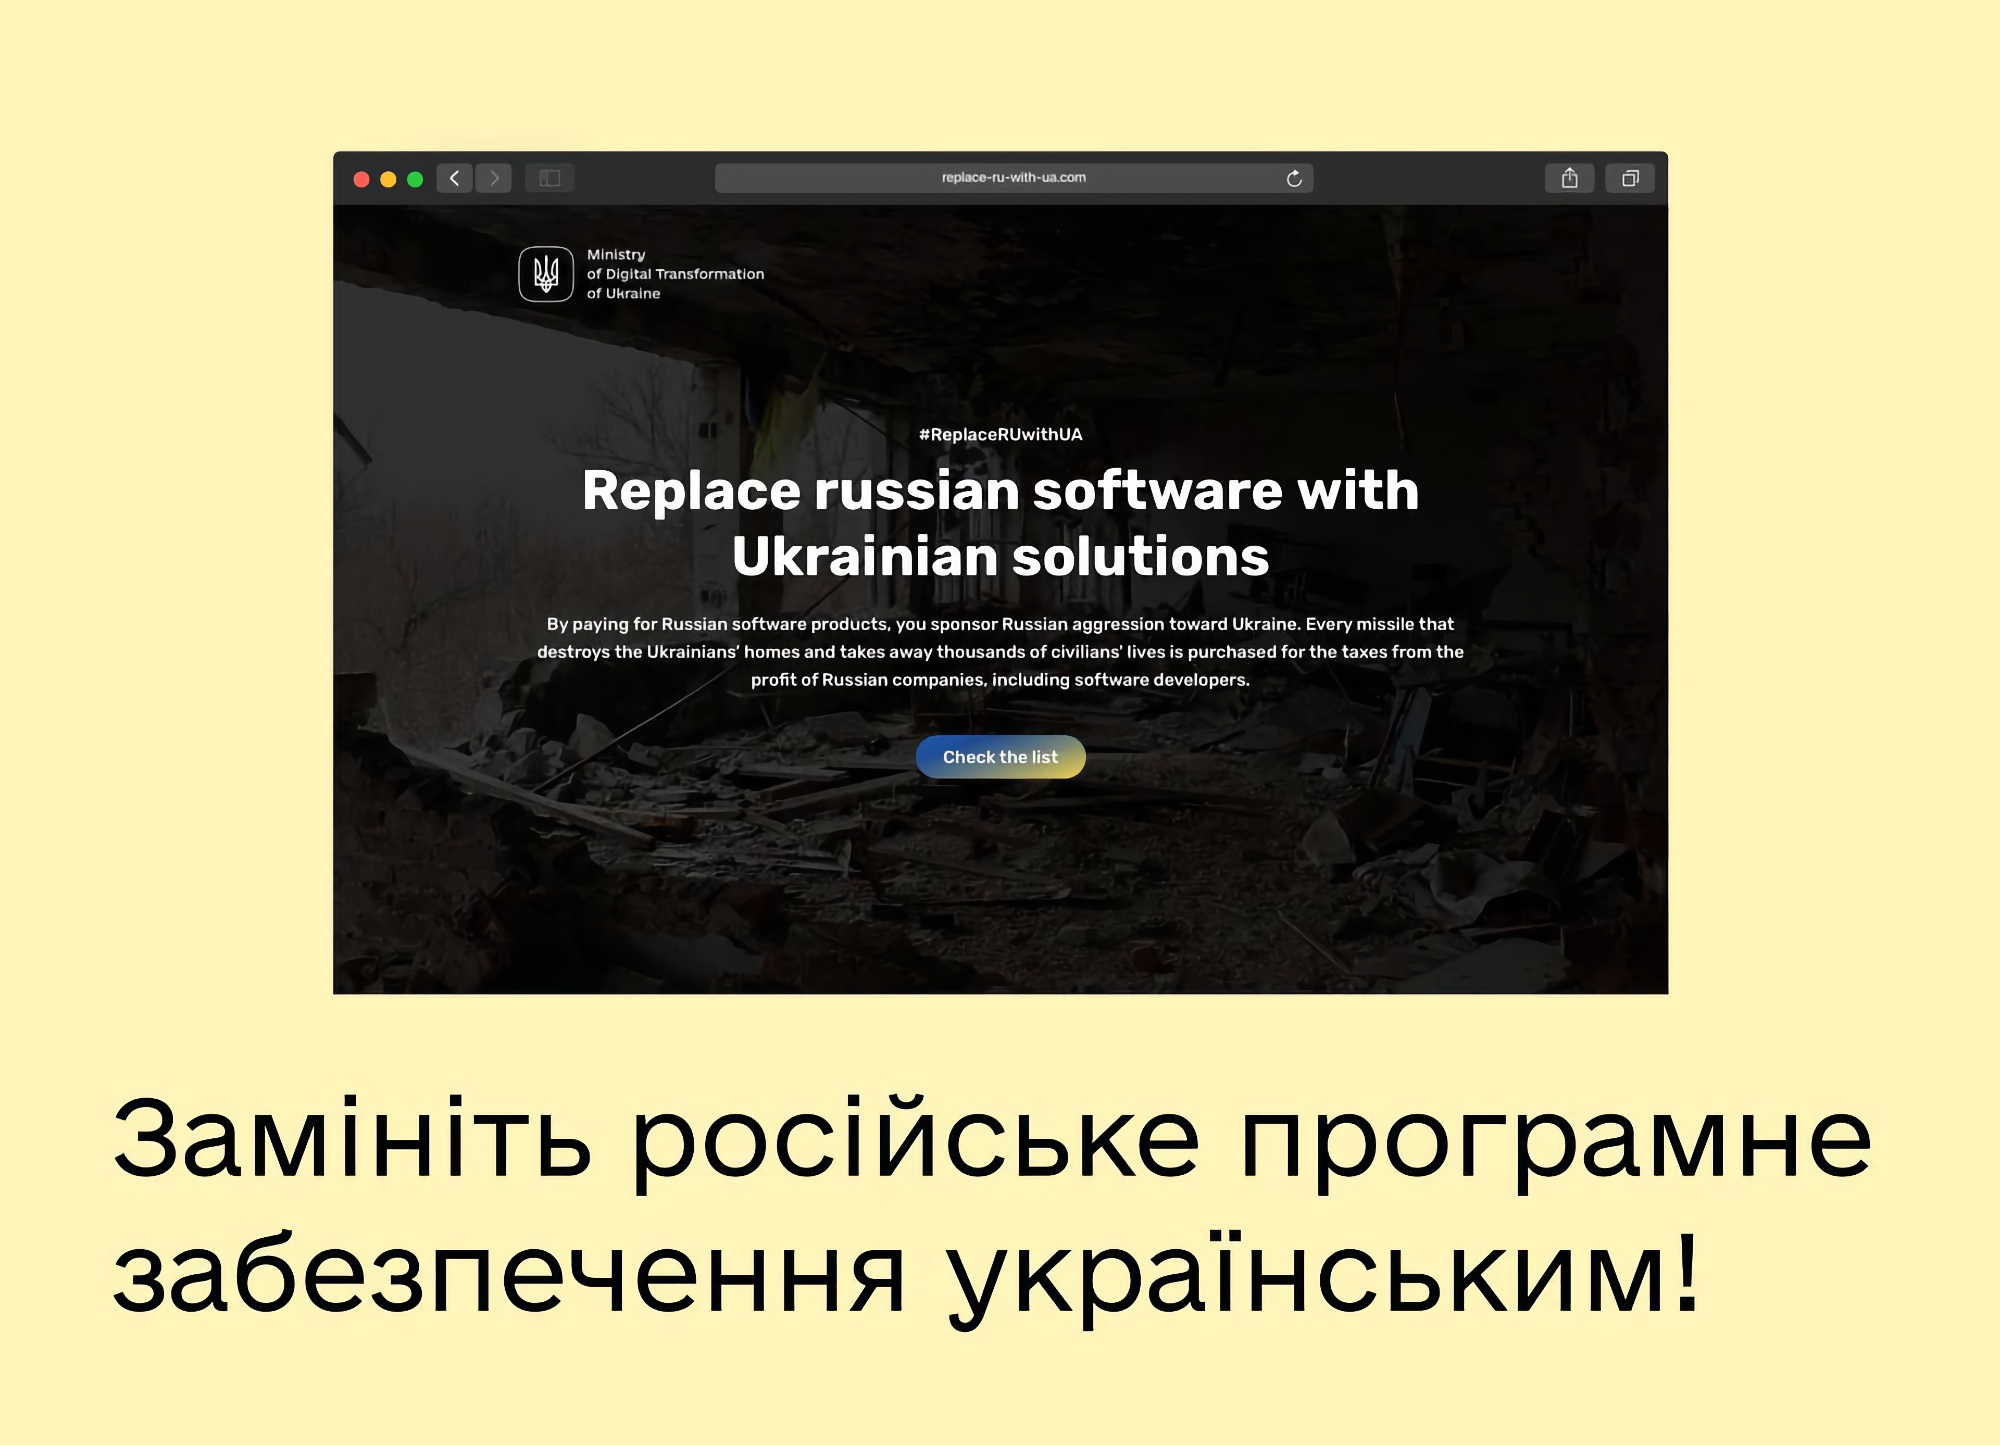 ReplaceRUwithUA: projekt, który pomaga ukraińskim i międzynarodowym firmom pozbyć się rosyjskiego oprogramowania